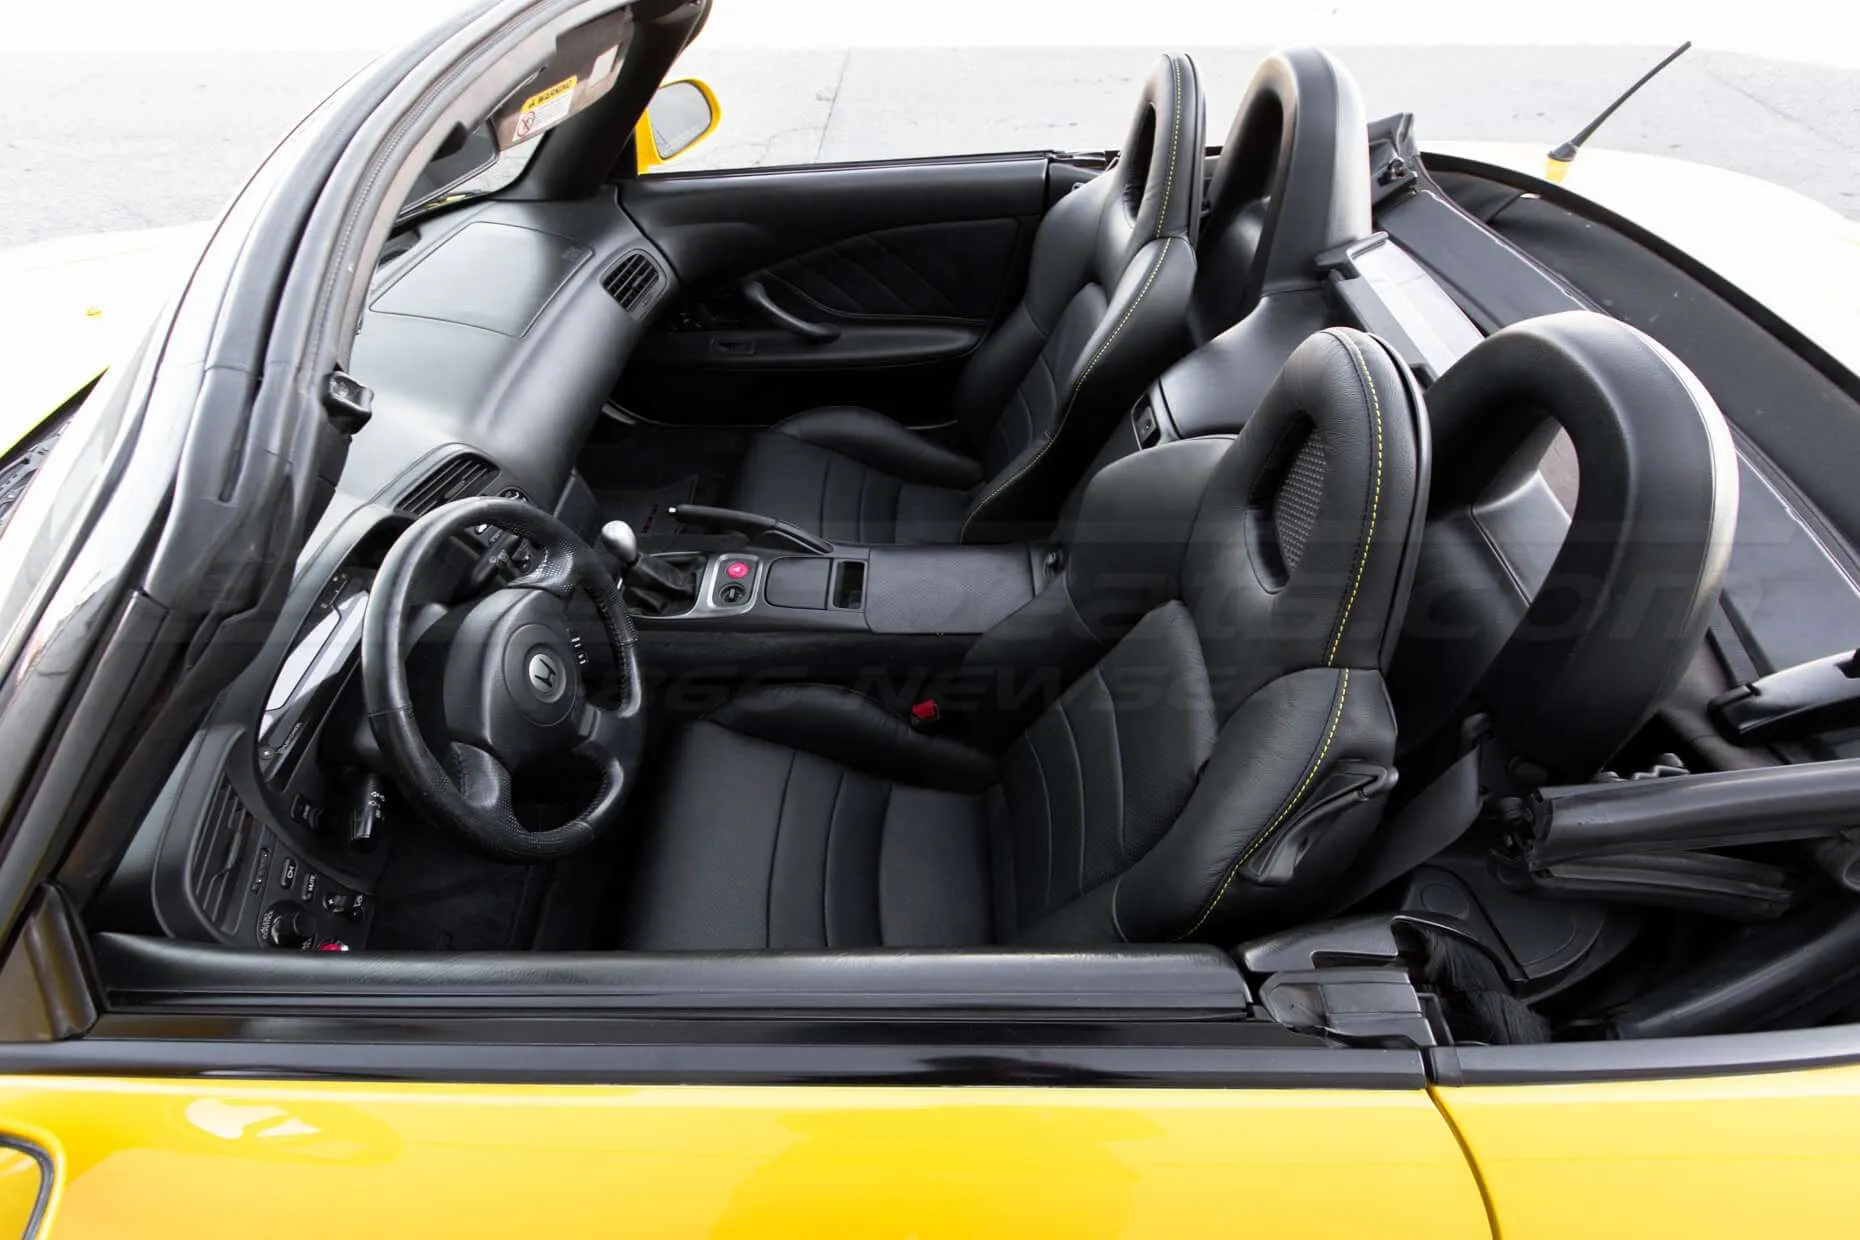 Honda S2000 Leather Upholster - Black - Full interior - overhead view